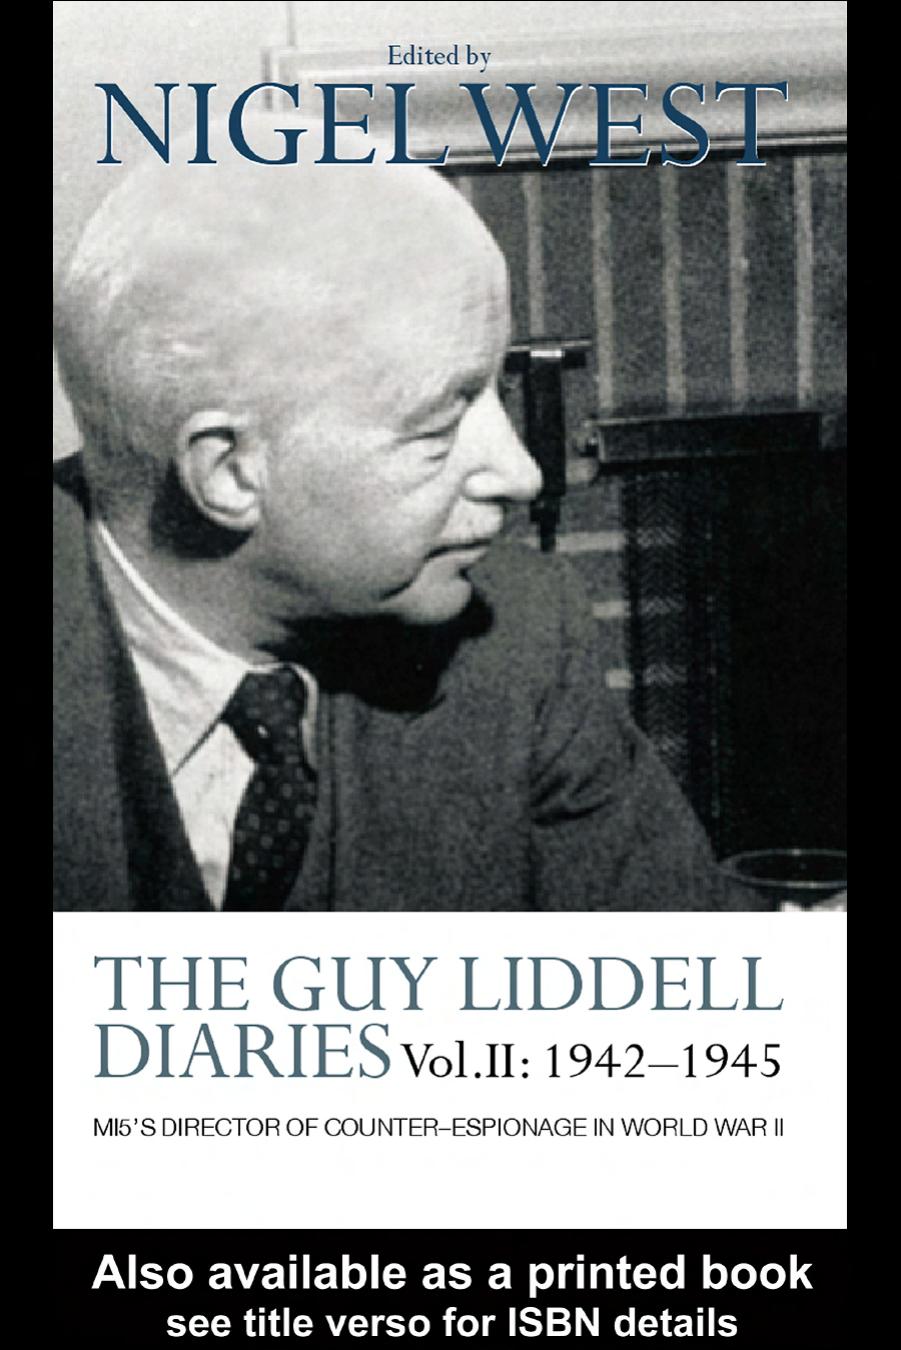 The Guy Liddell Diaries Vol. II: 1942-1945